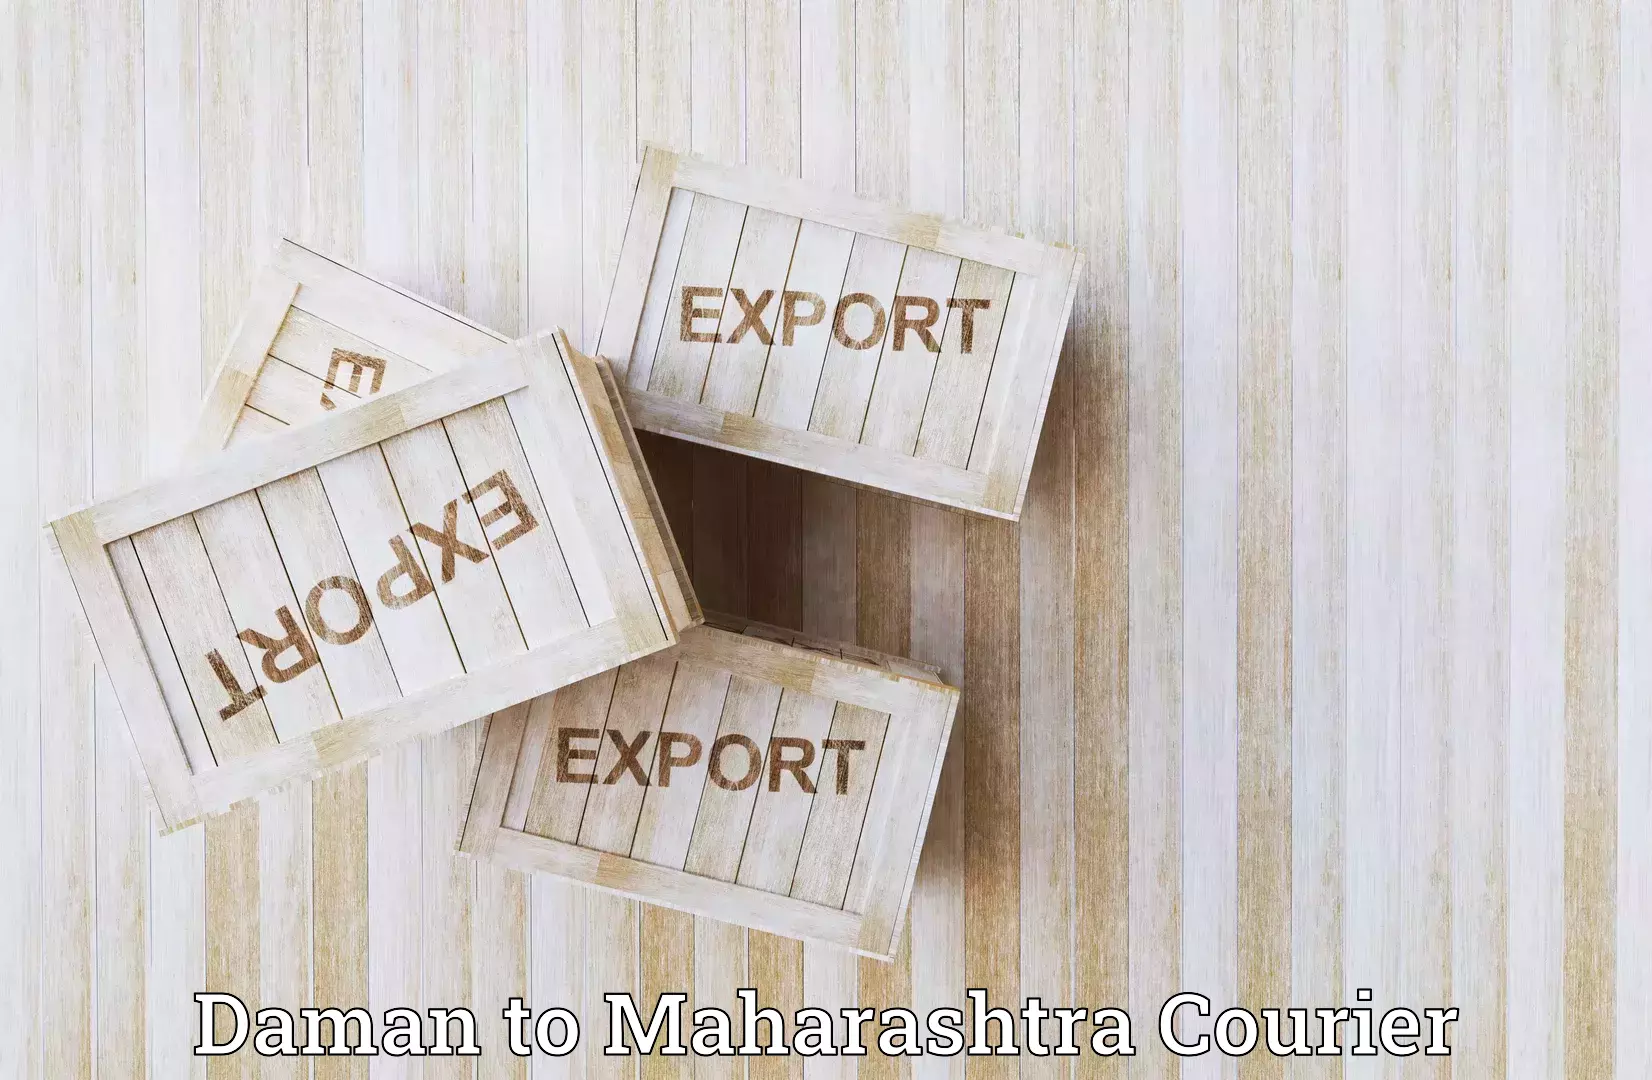 Express delivery capabilities Daman to Maharashtra